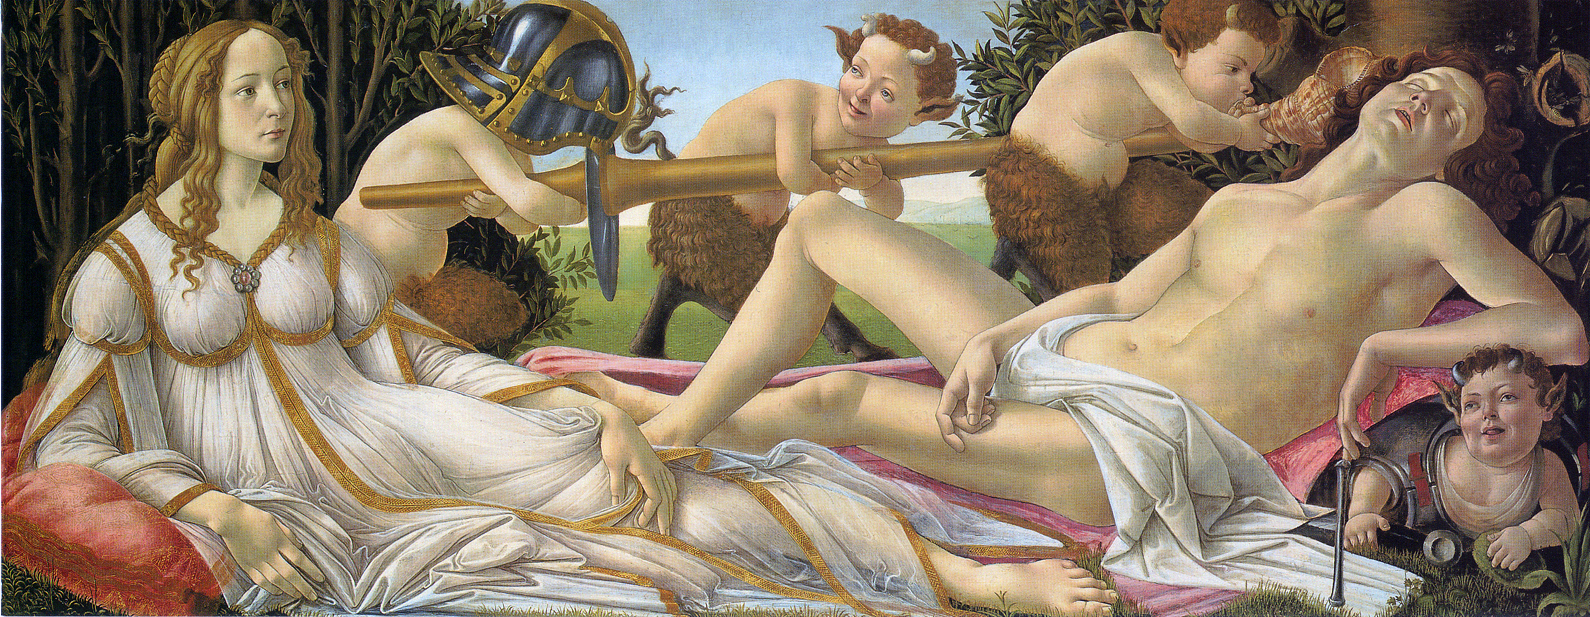 Botticelli-1445-1510 (24).jpg